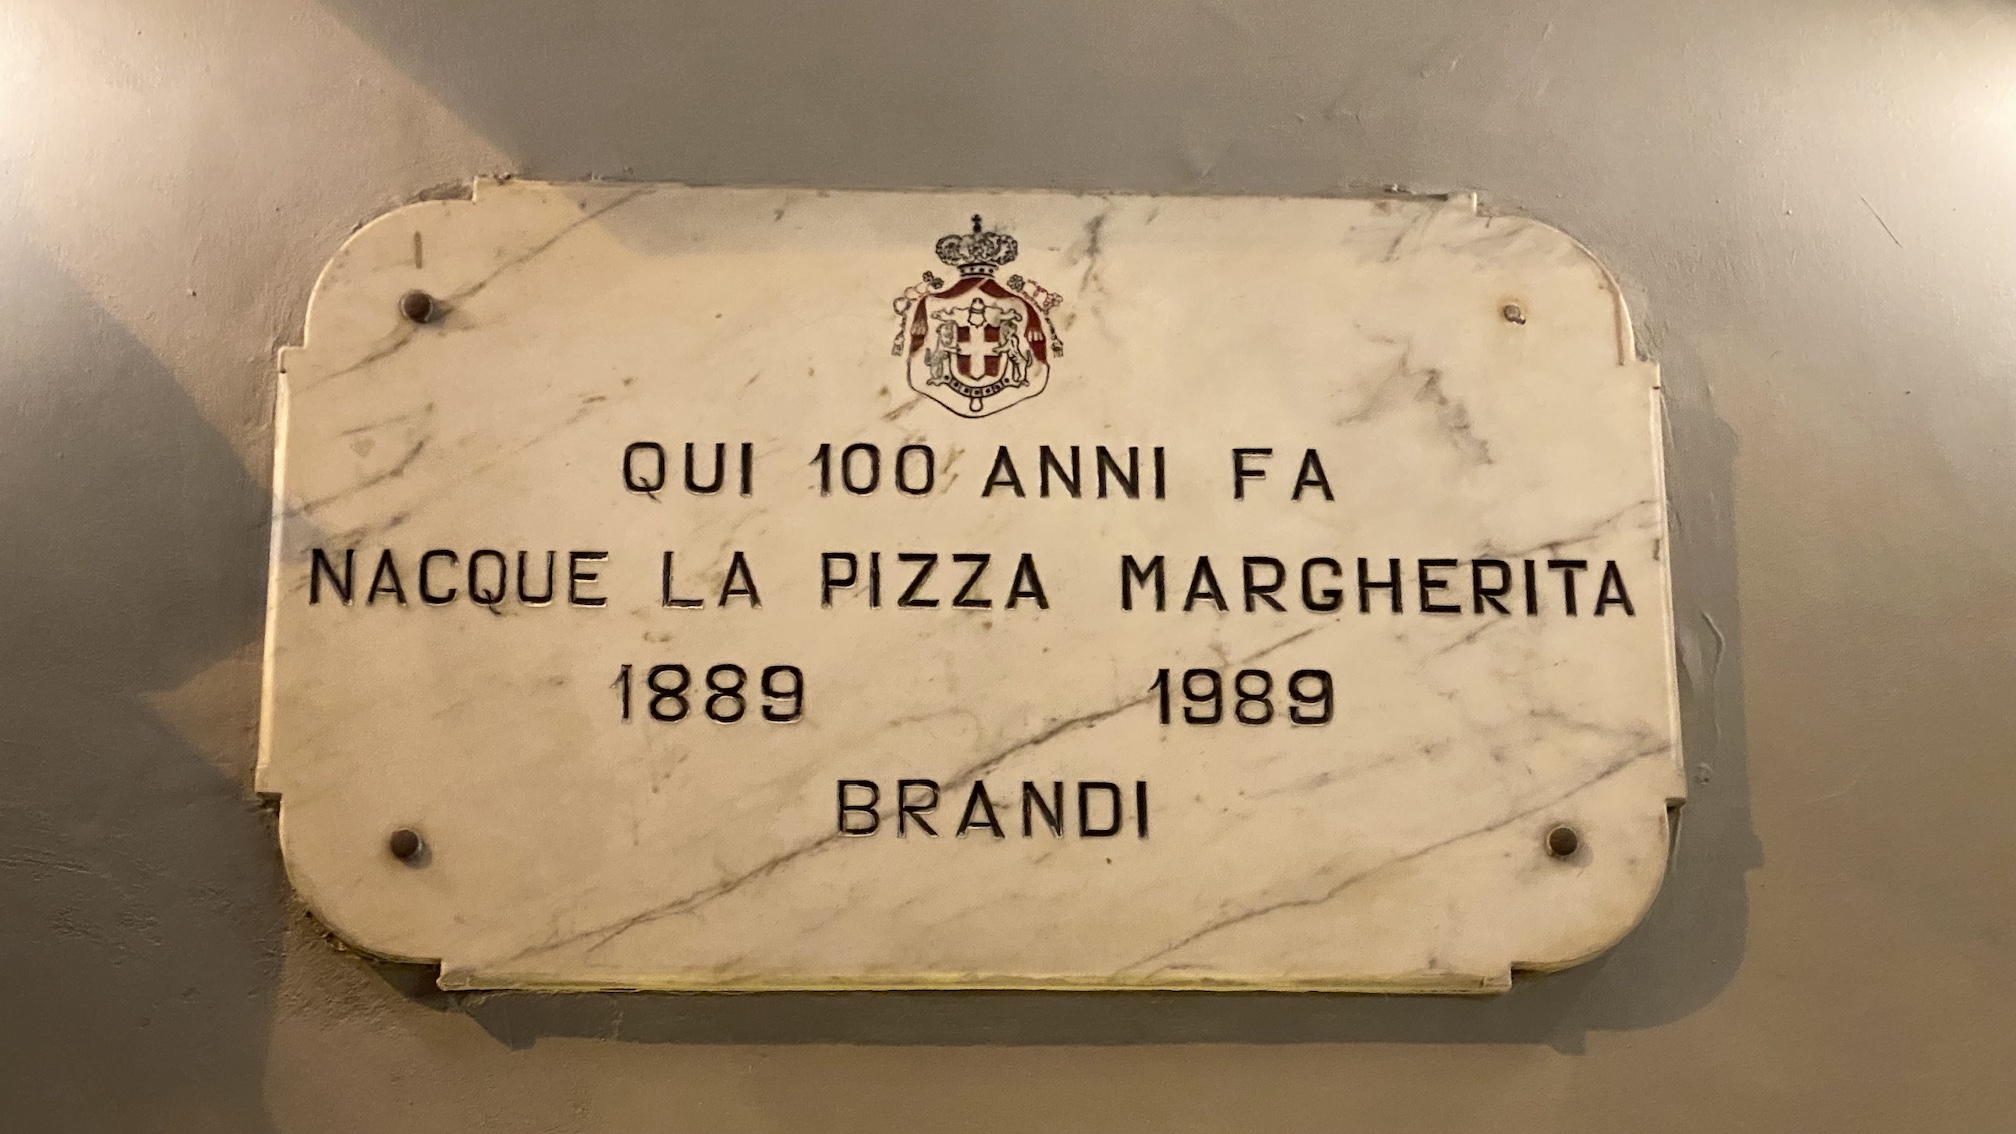 Place where the Pizza was born in Napoli